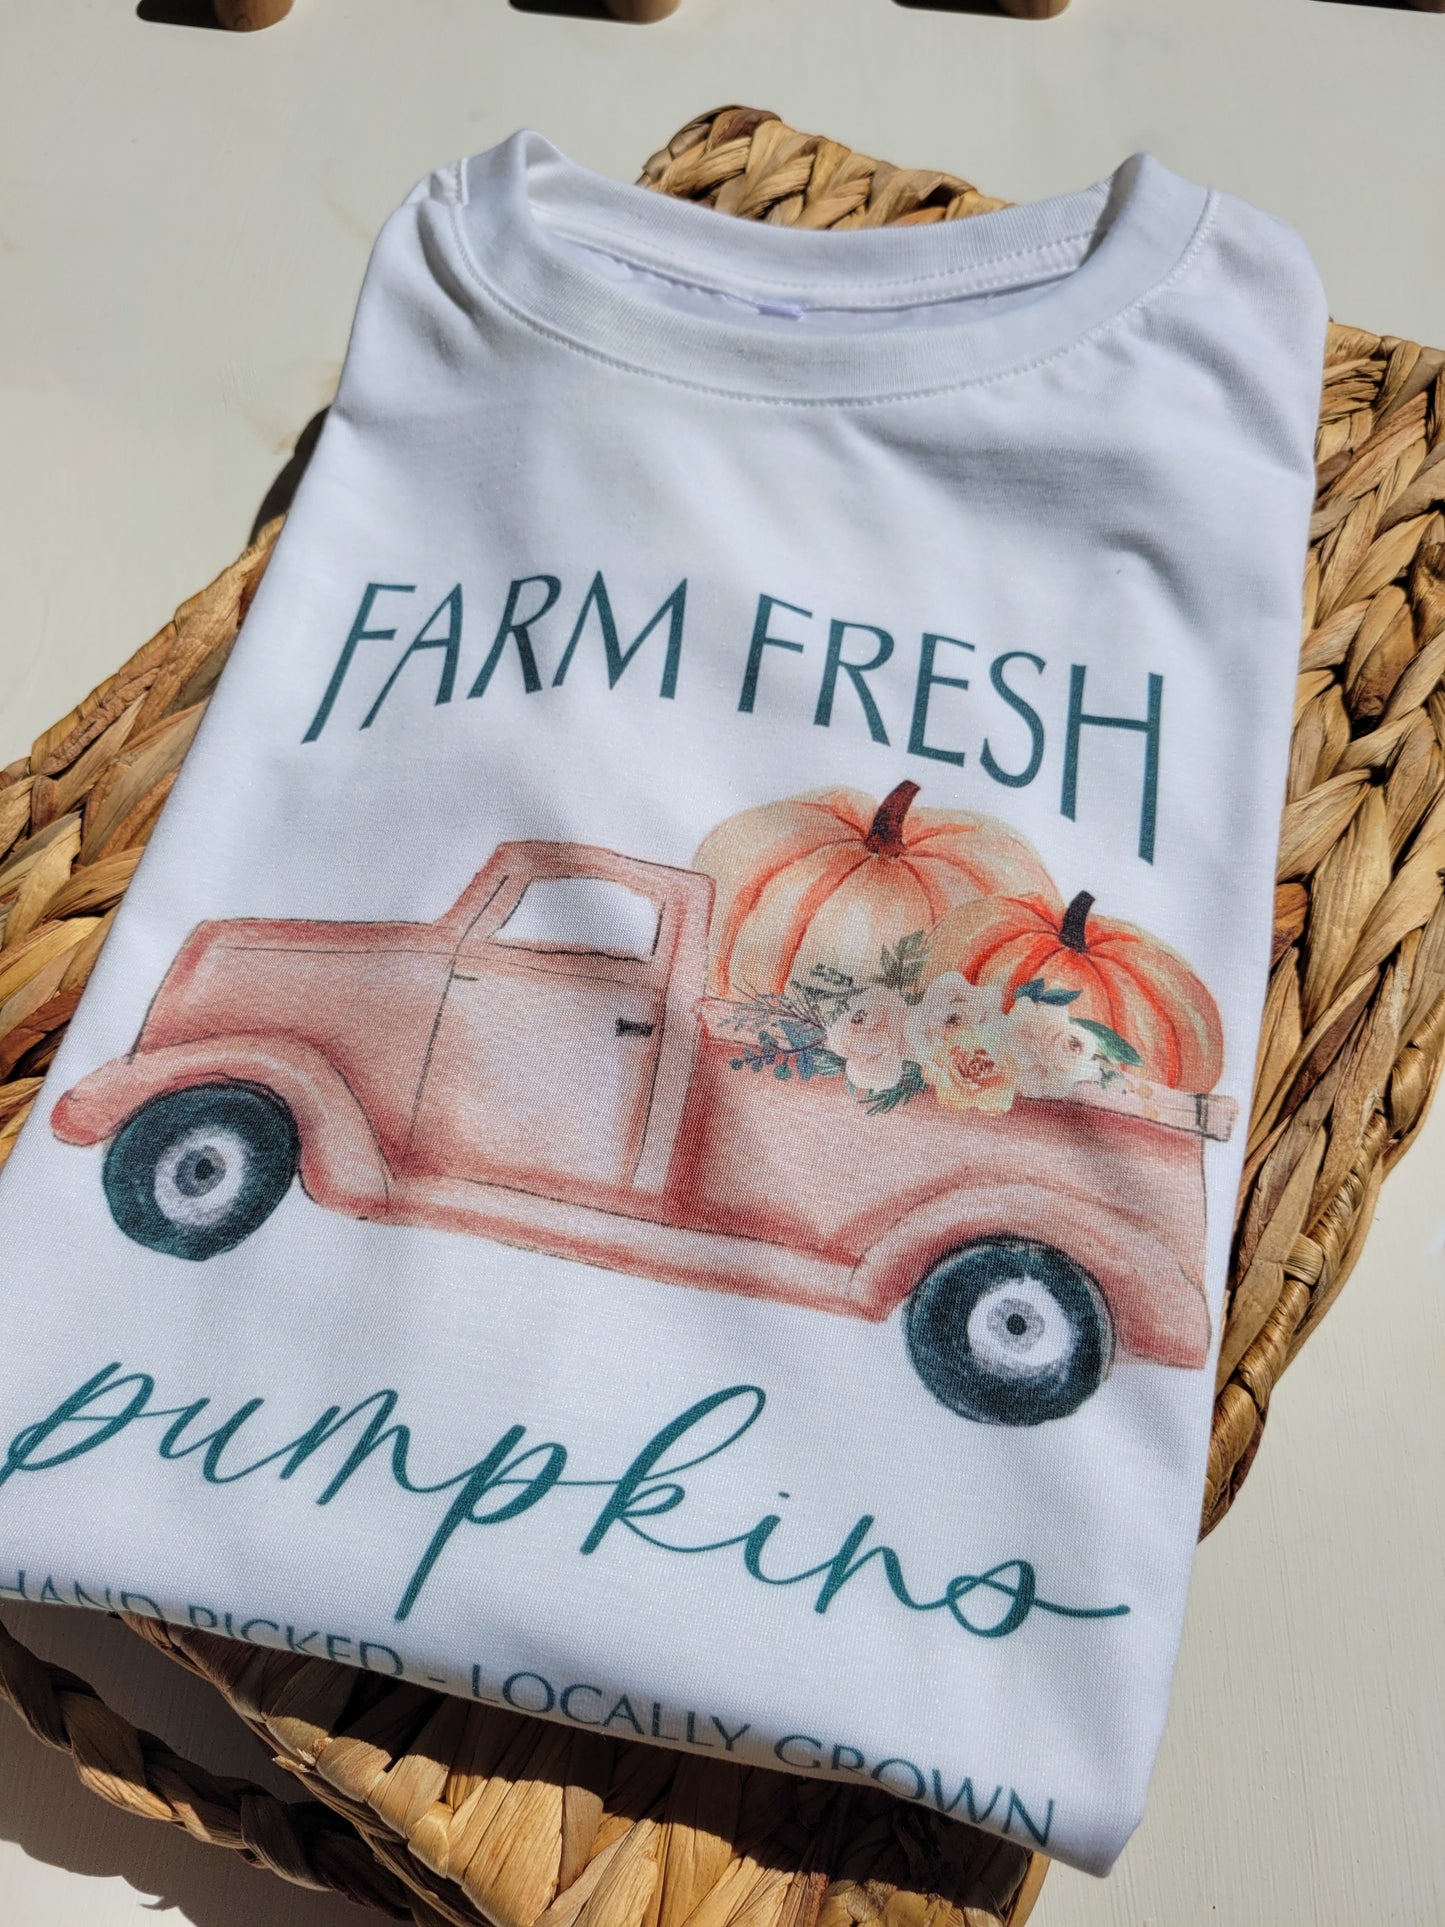 Farm fresh pumpkins